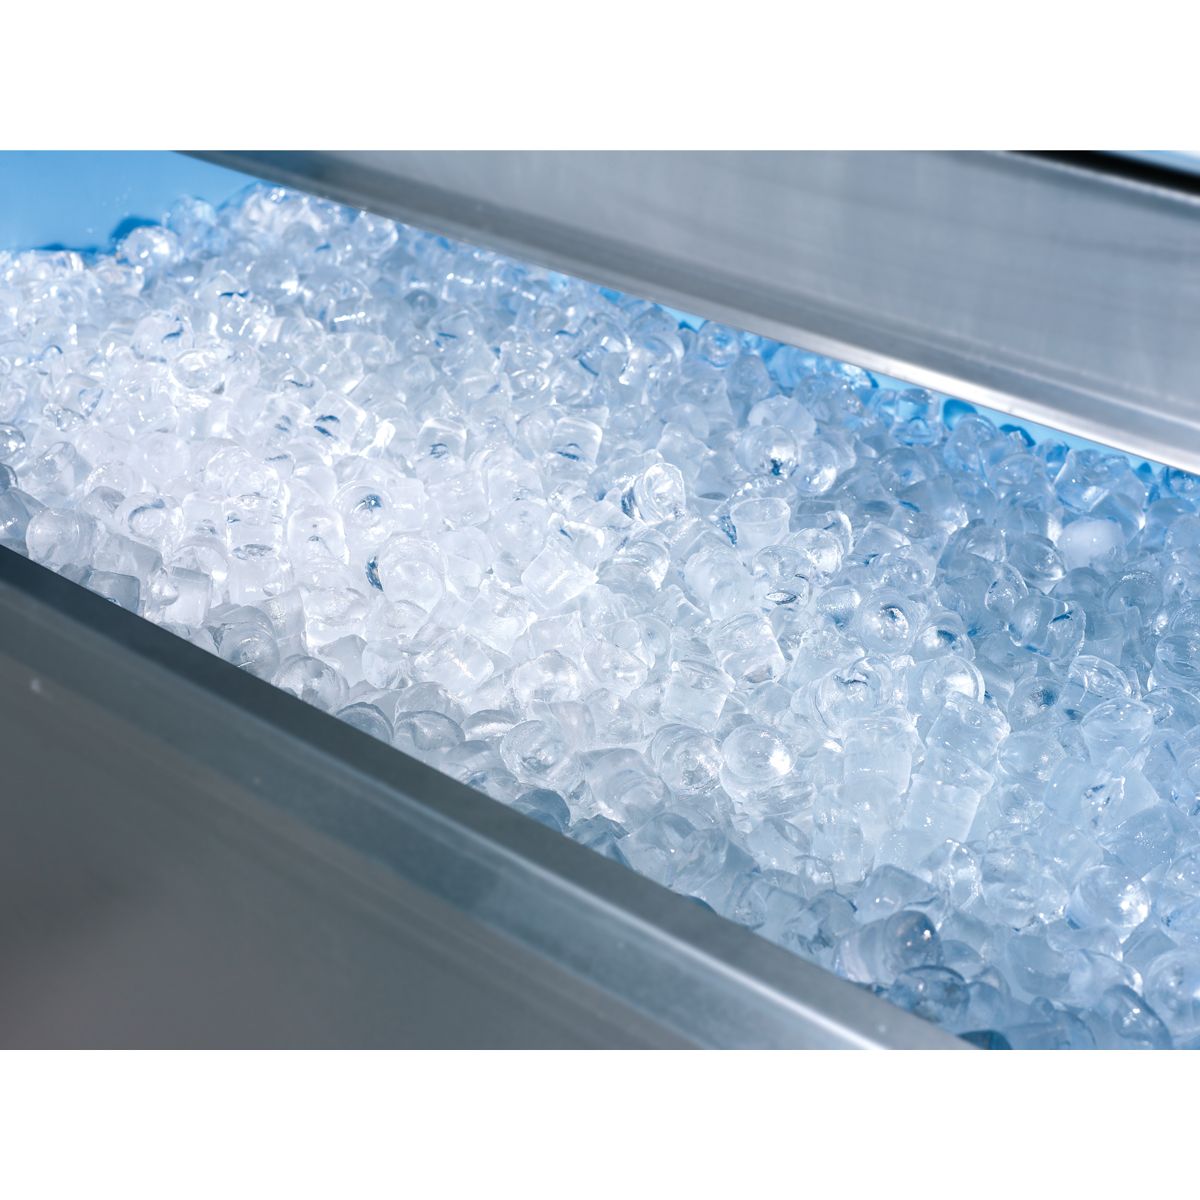 Máquina comercial para hacer hielo de 120 libras/24 horas con capacidad de  hielo de 35 libras, 45 cubos de hielo transparentes listos en 11-20